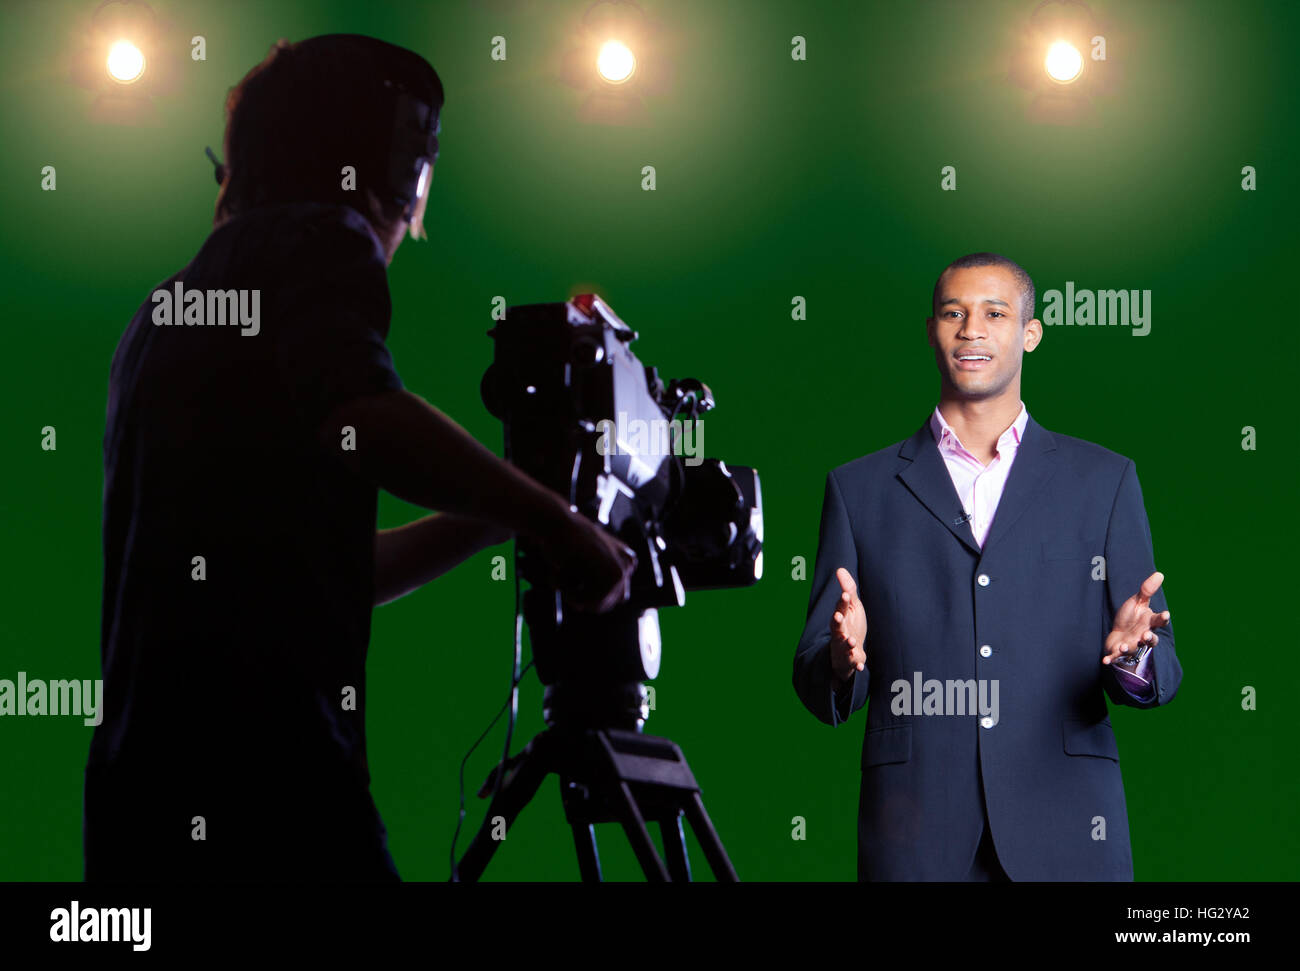 Présentateur parler à huis clos dans un écran vert studio avec la silhouette du caméraman en premier plan et projecteurs à l'arrière-plan. Banque D'Images